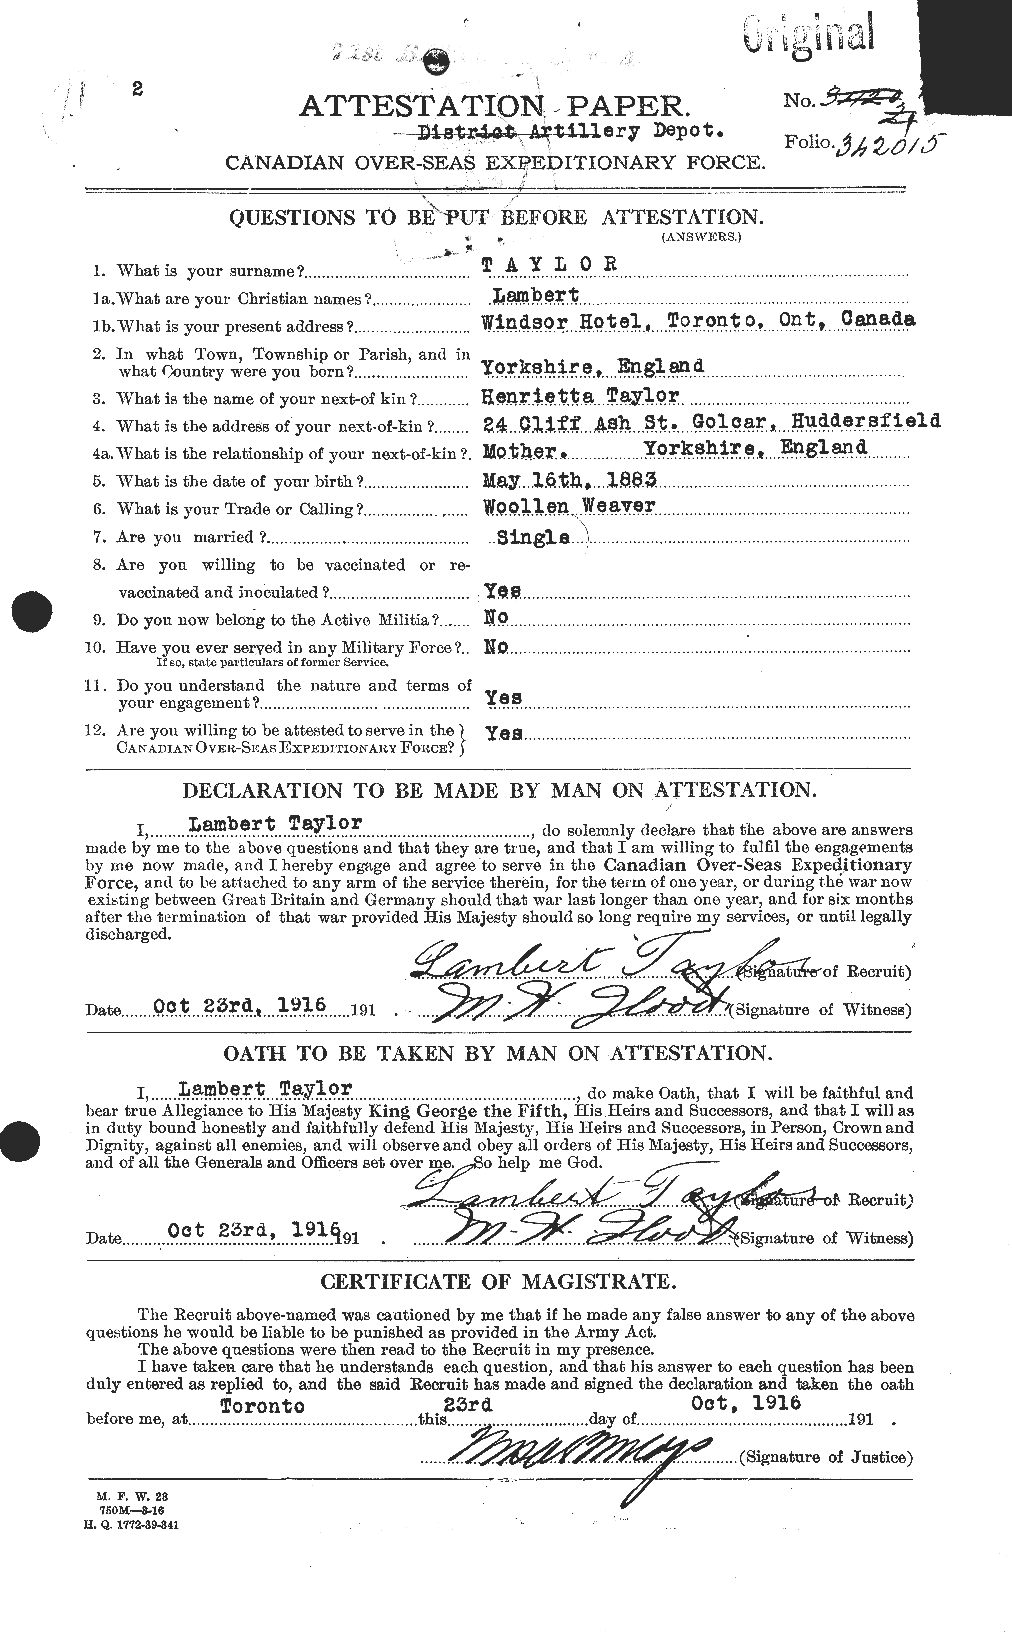 Dossiers du Personnel de la Première Guerre mondiale - CEC 627604a